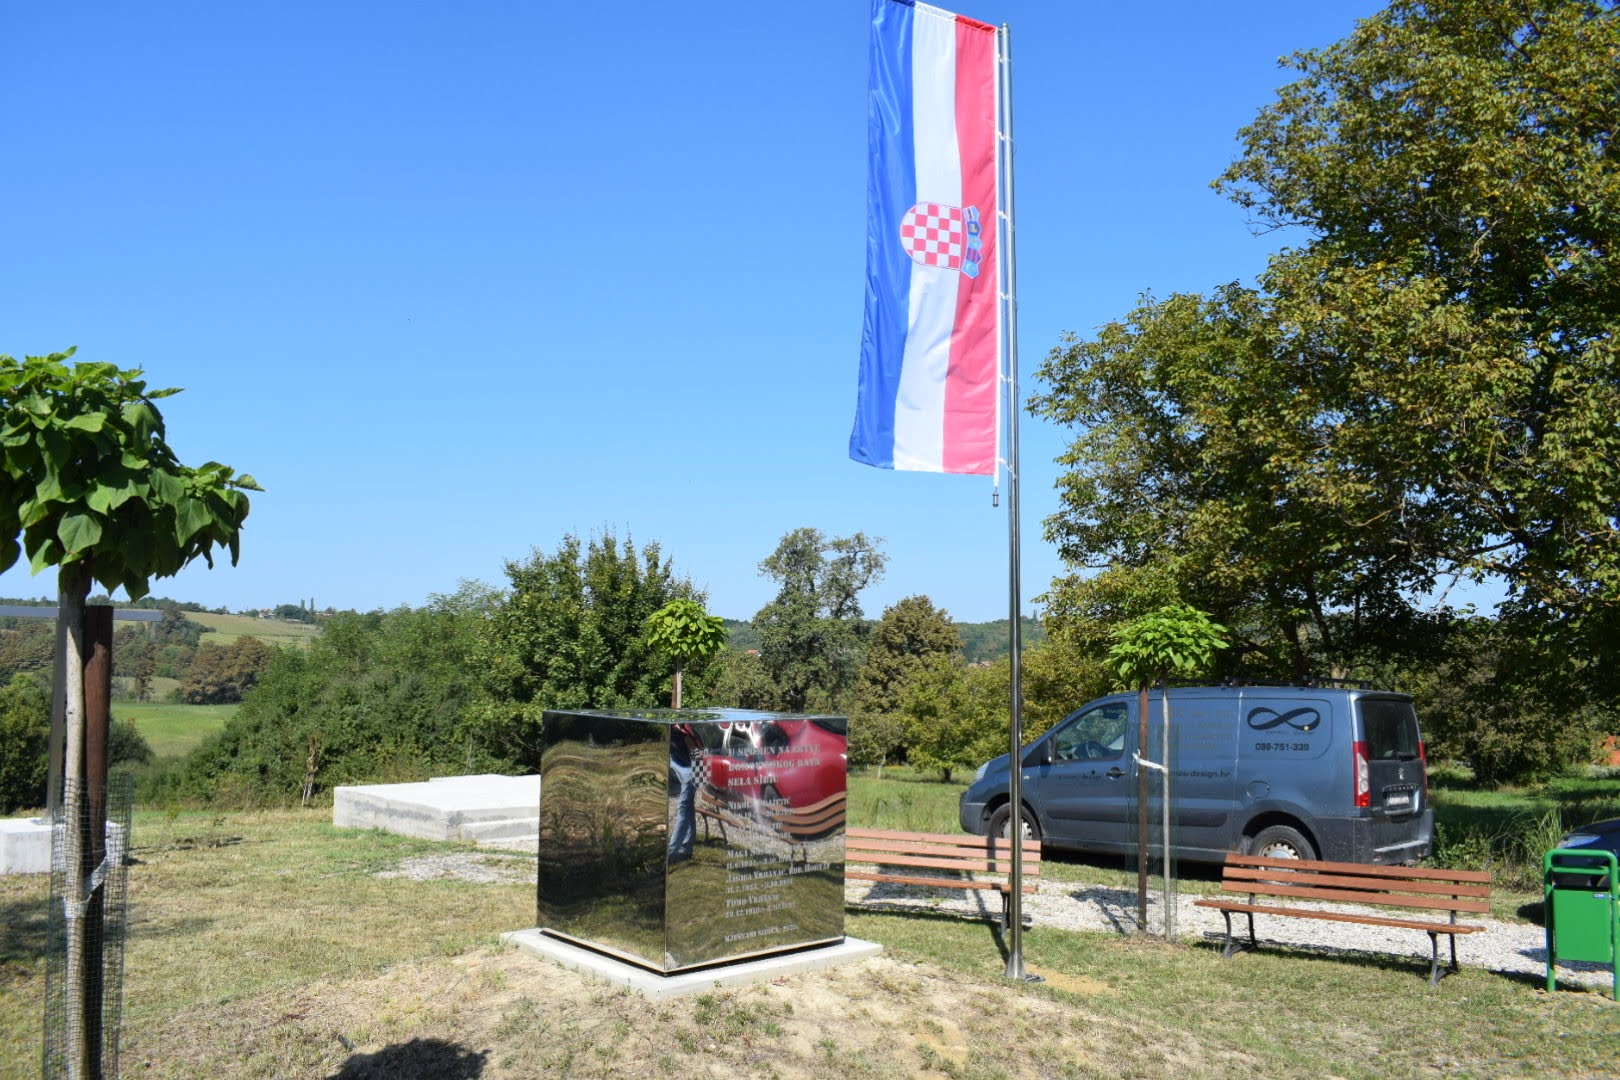 Zamjenik sisačko-moslavačkog župana Mihael Jurić je u subotu 4. rujna 2021. godine, u Sibiću kod spomen-obilježja žrtvama iz Domovinskog rata nazočio postavljanju jarbola sa zastavom, donacije tvrtke COSMOS DESIGN iz Varaždina.